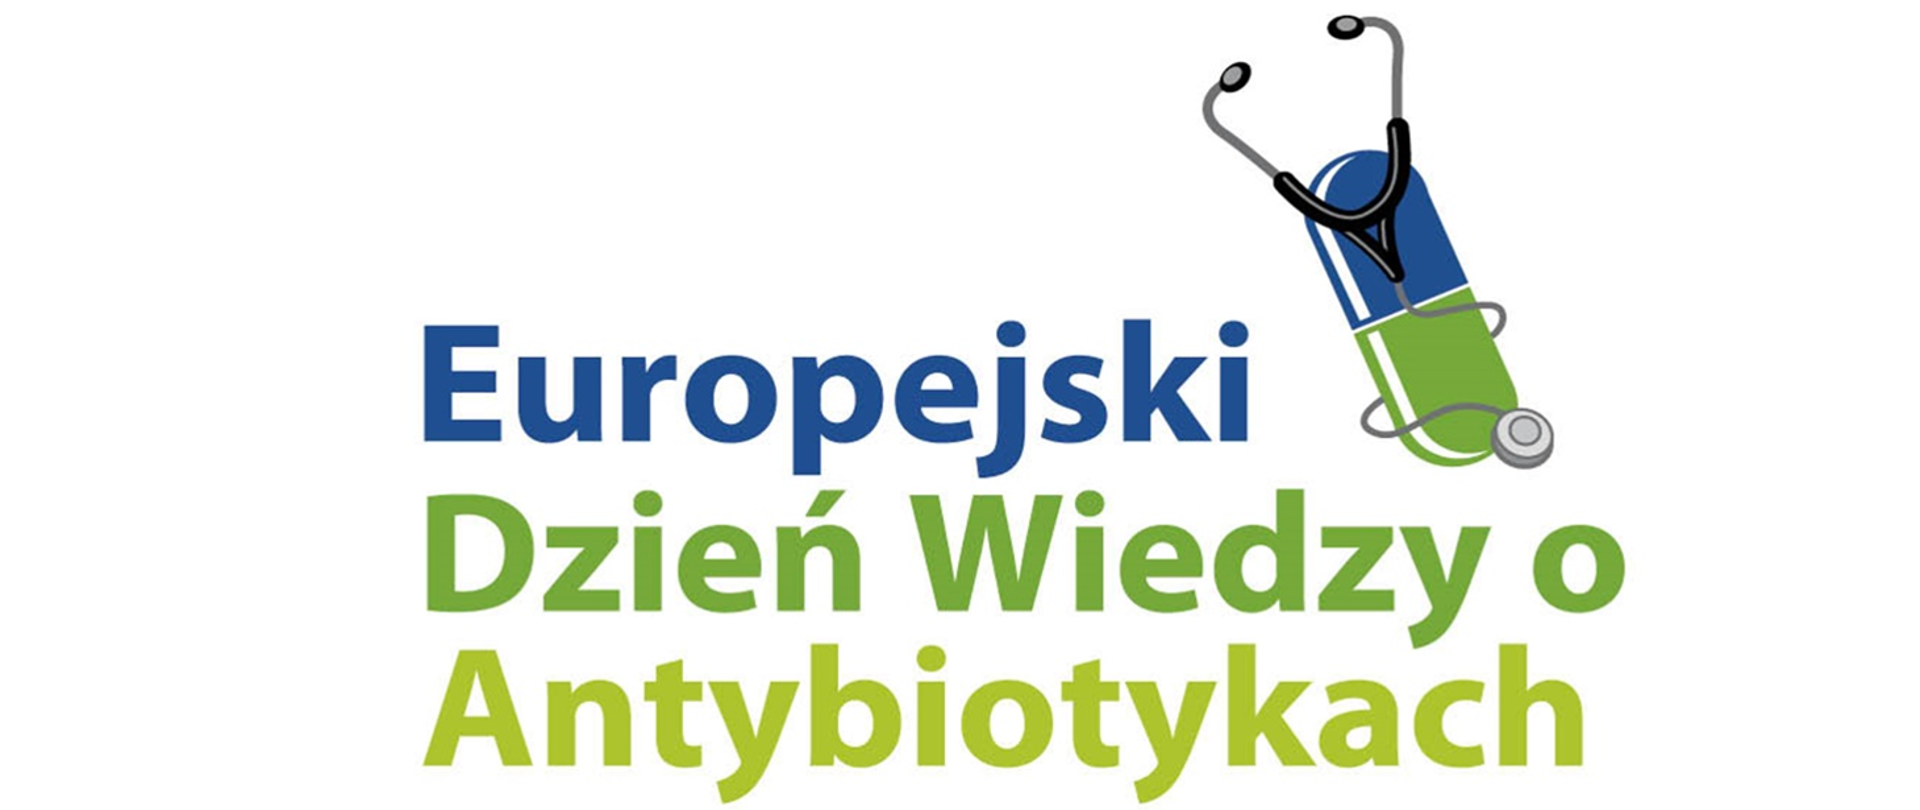 Plakat pt. Europejski dzień wiedzy o antybiotykach